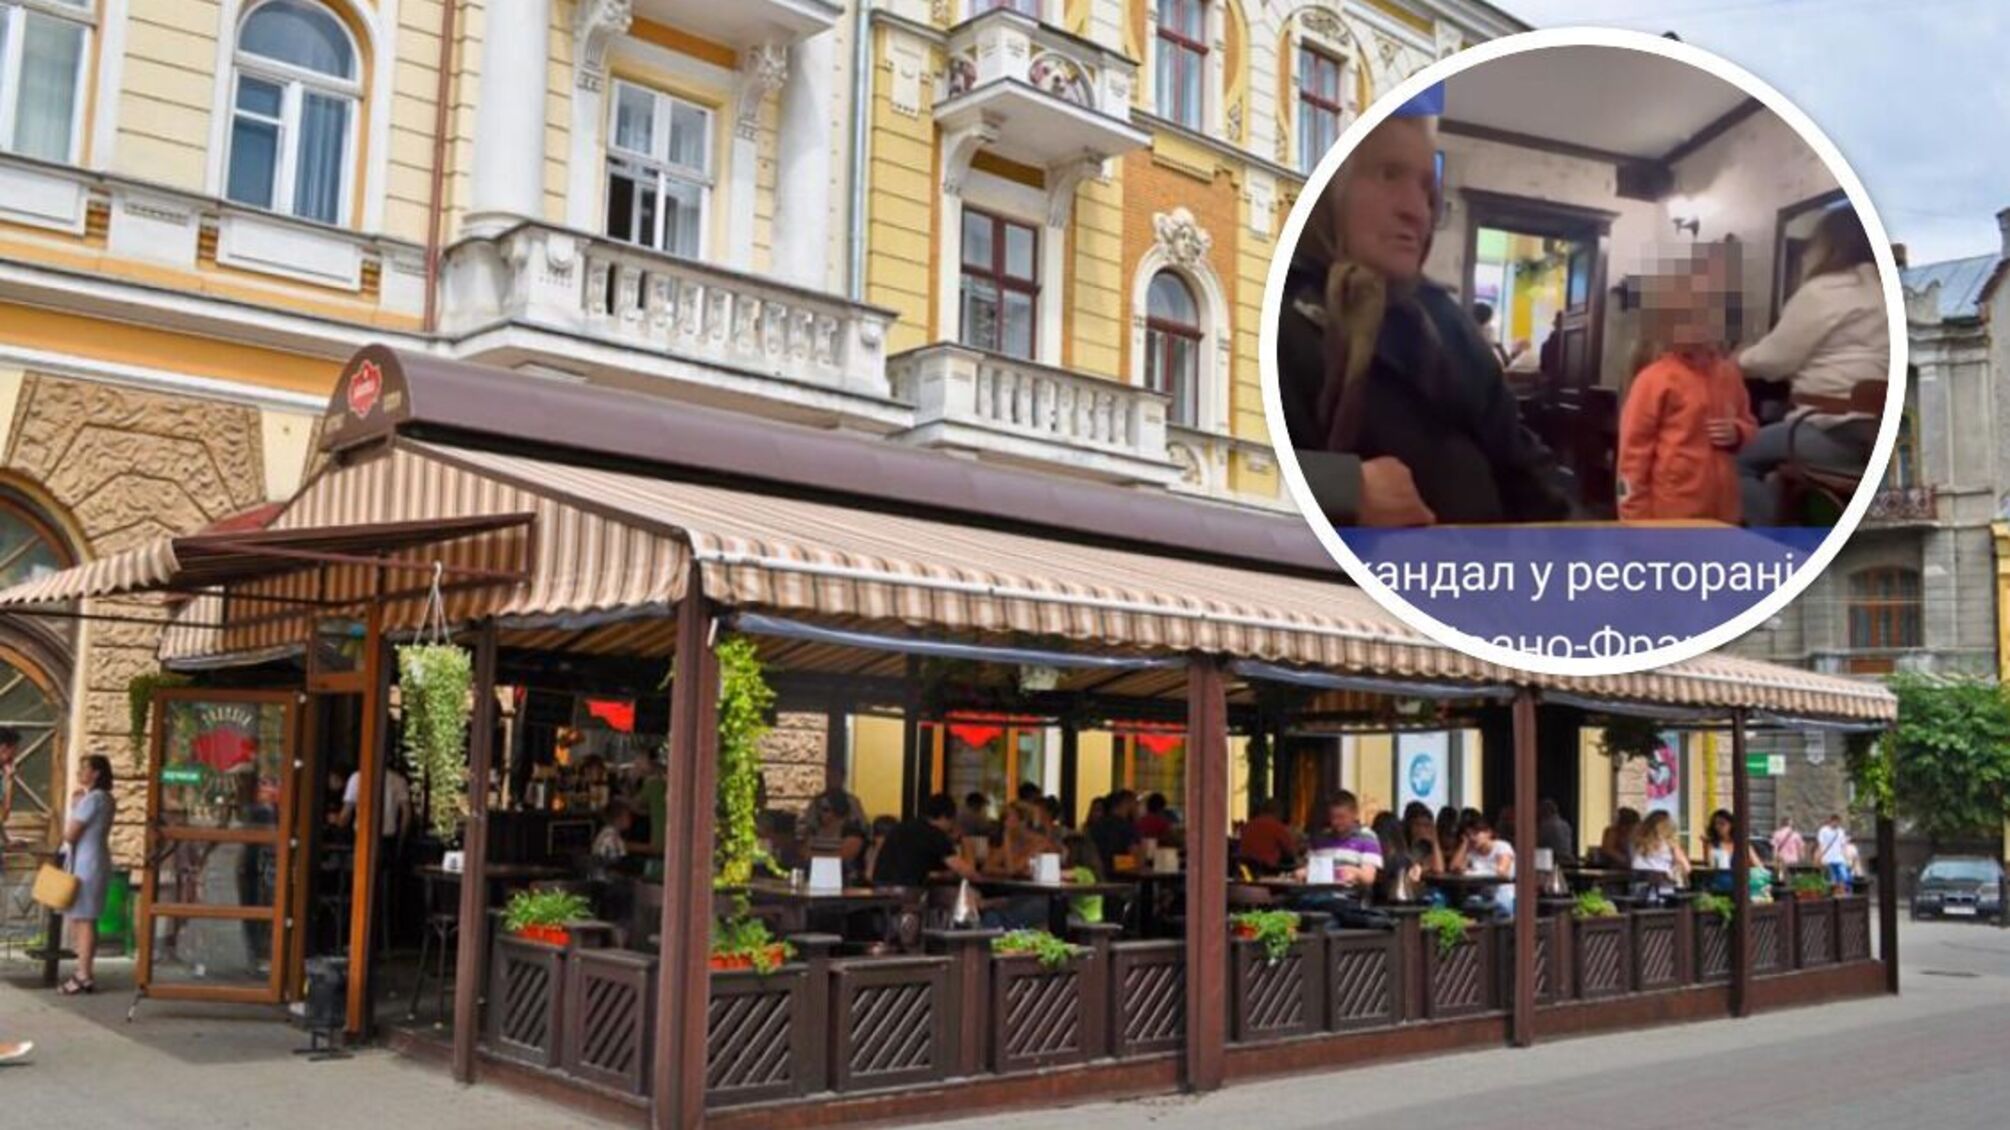 Скандал в Ивано-Франковске: старушку пытались выгнать из ресторана 'из-за запаха' (видео)